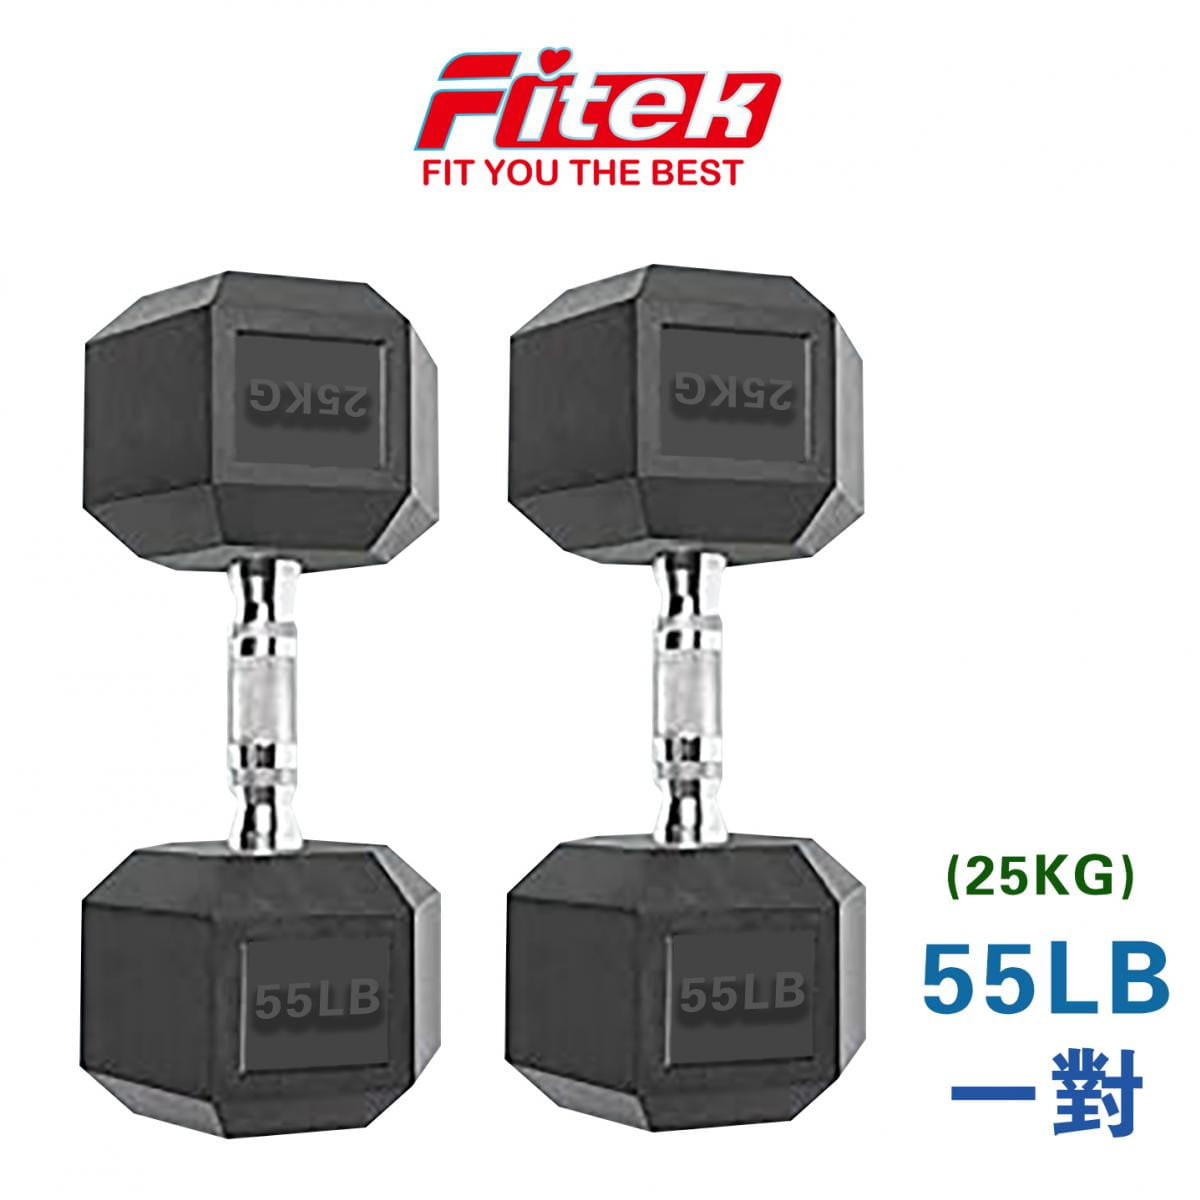 商用六角包膠啞鈴55LB【Fitek】 0